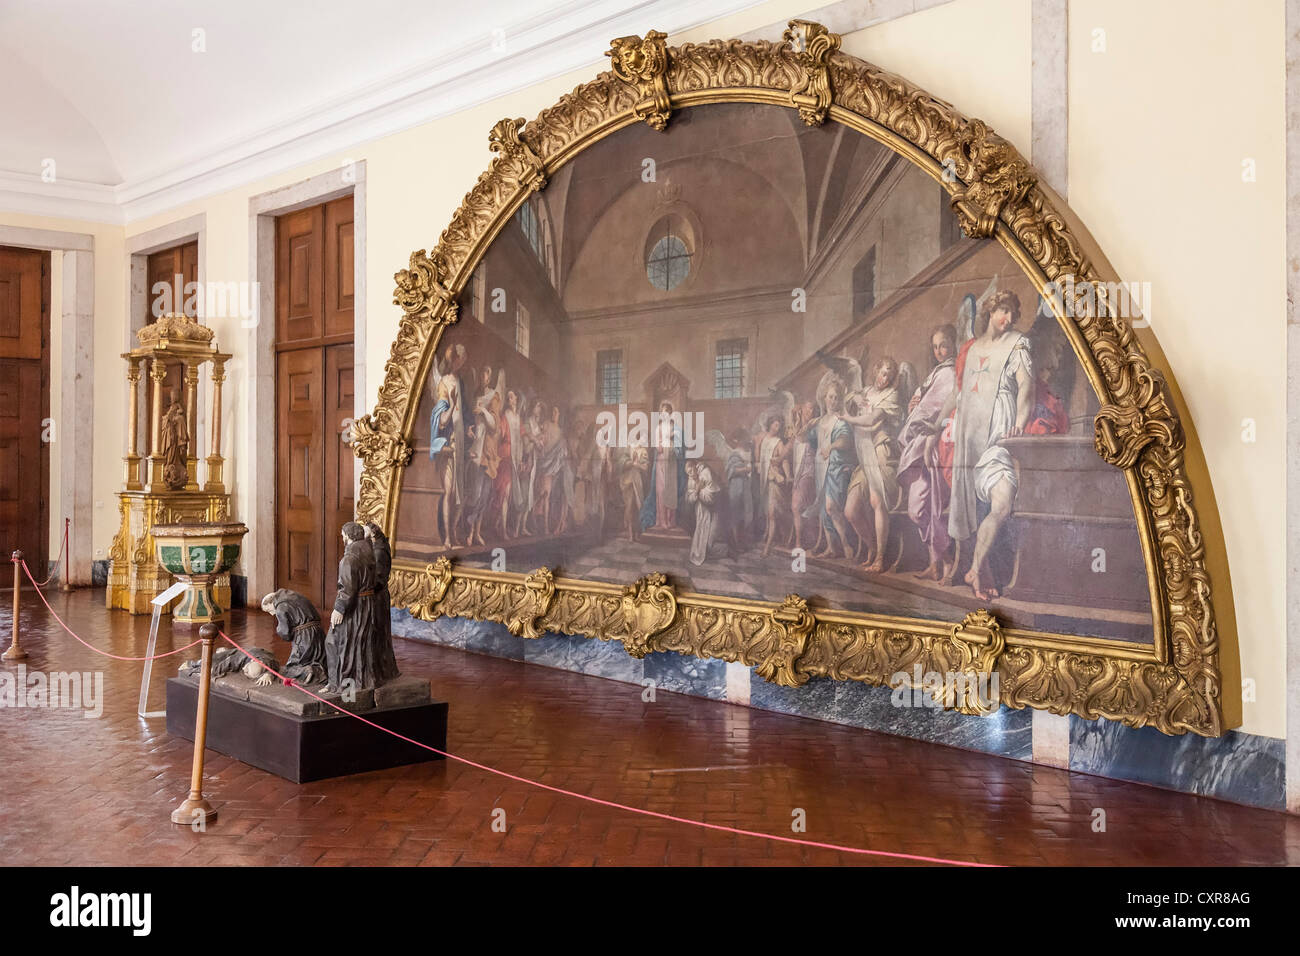 Sakrale Kunst Kern der Nationalpalast von Mafra. Portugal. Franziskaner Orden. 18. Jahrhundert Barock-Architektur. Stockfoto